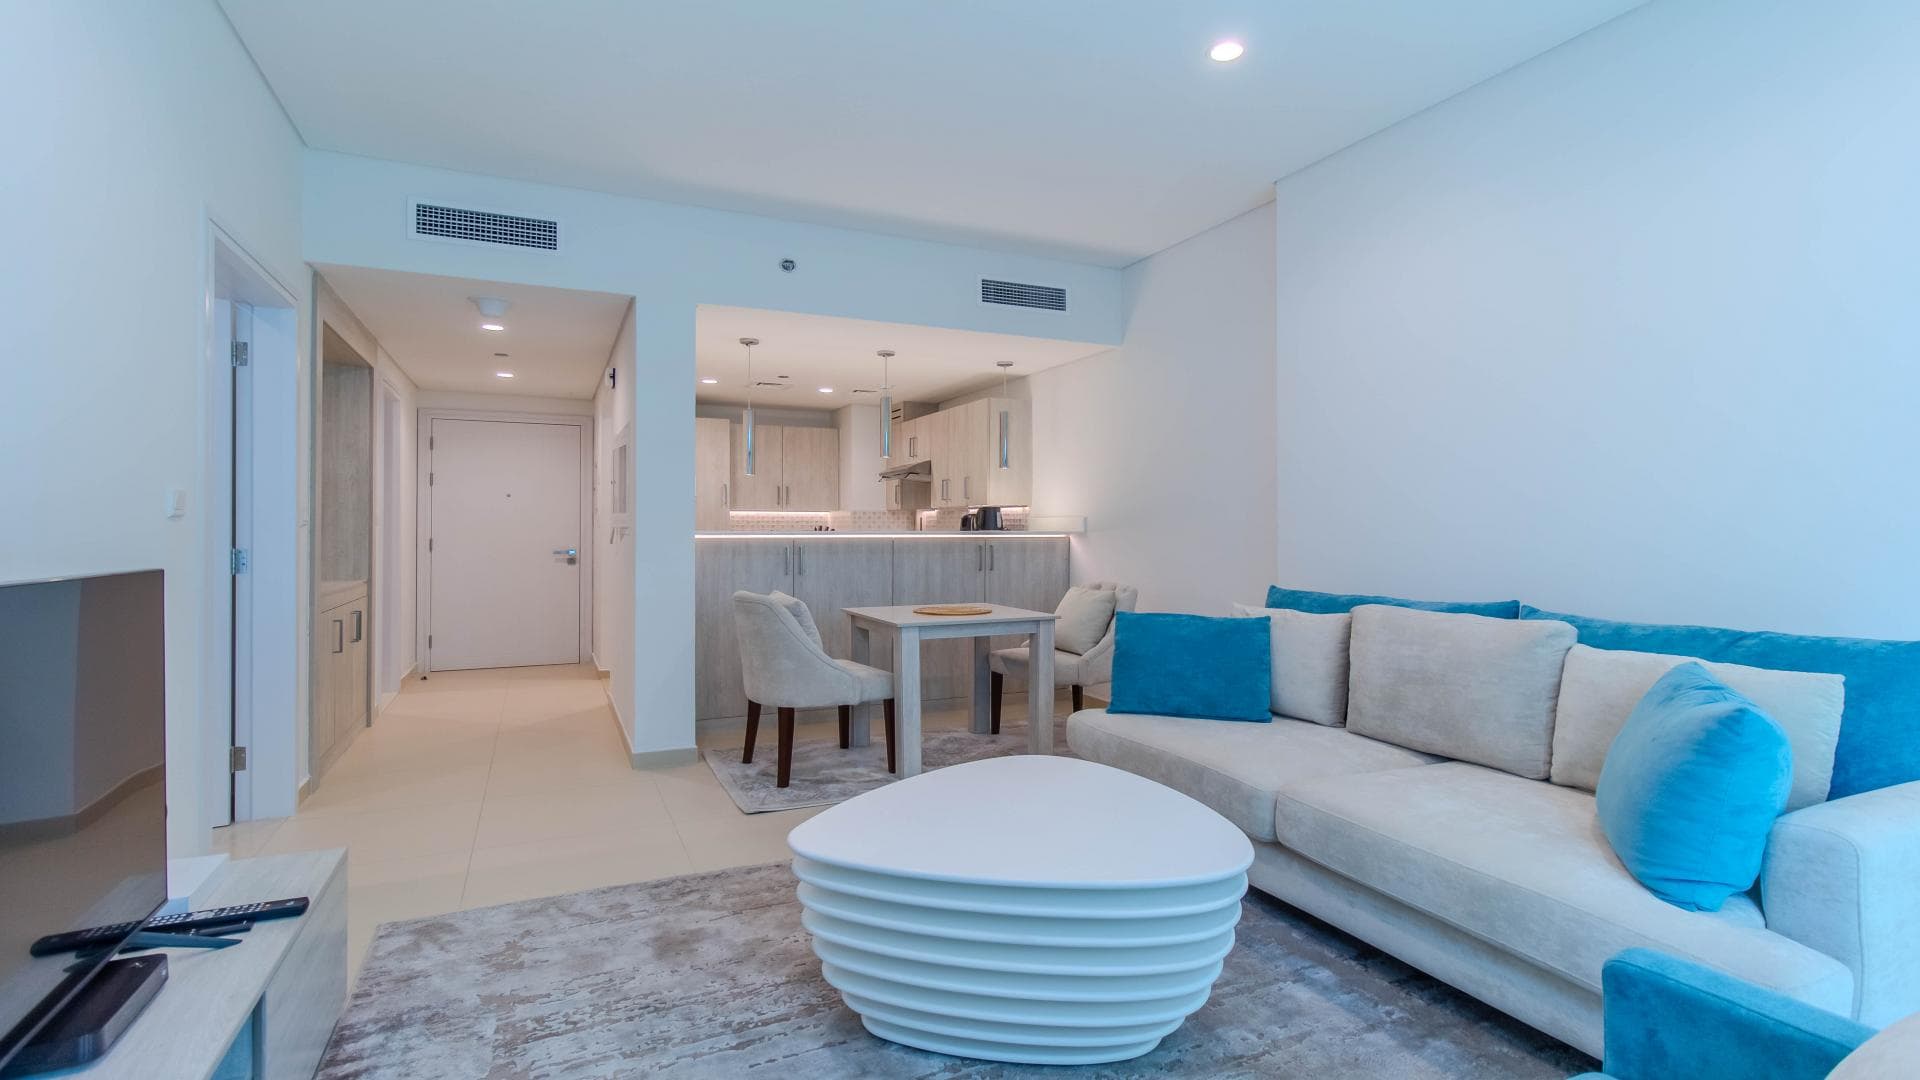 1 Bedroom Apartment For Rent Al Ramth 47 Lp38770 1e80188929df3400.jpg